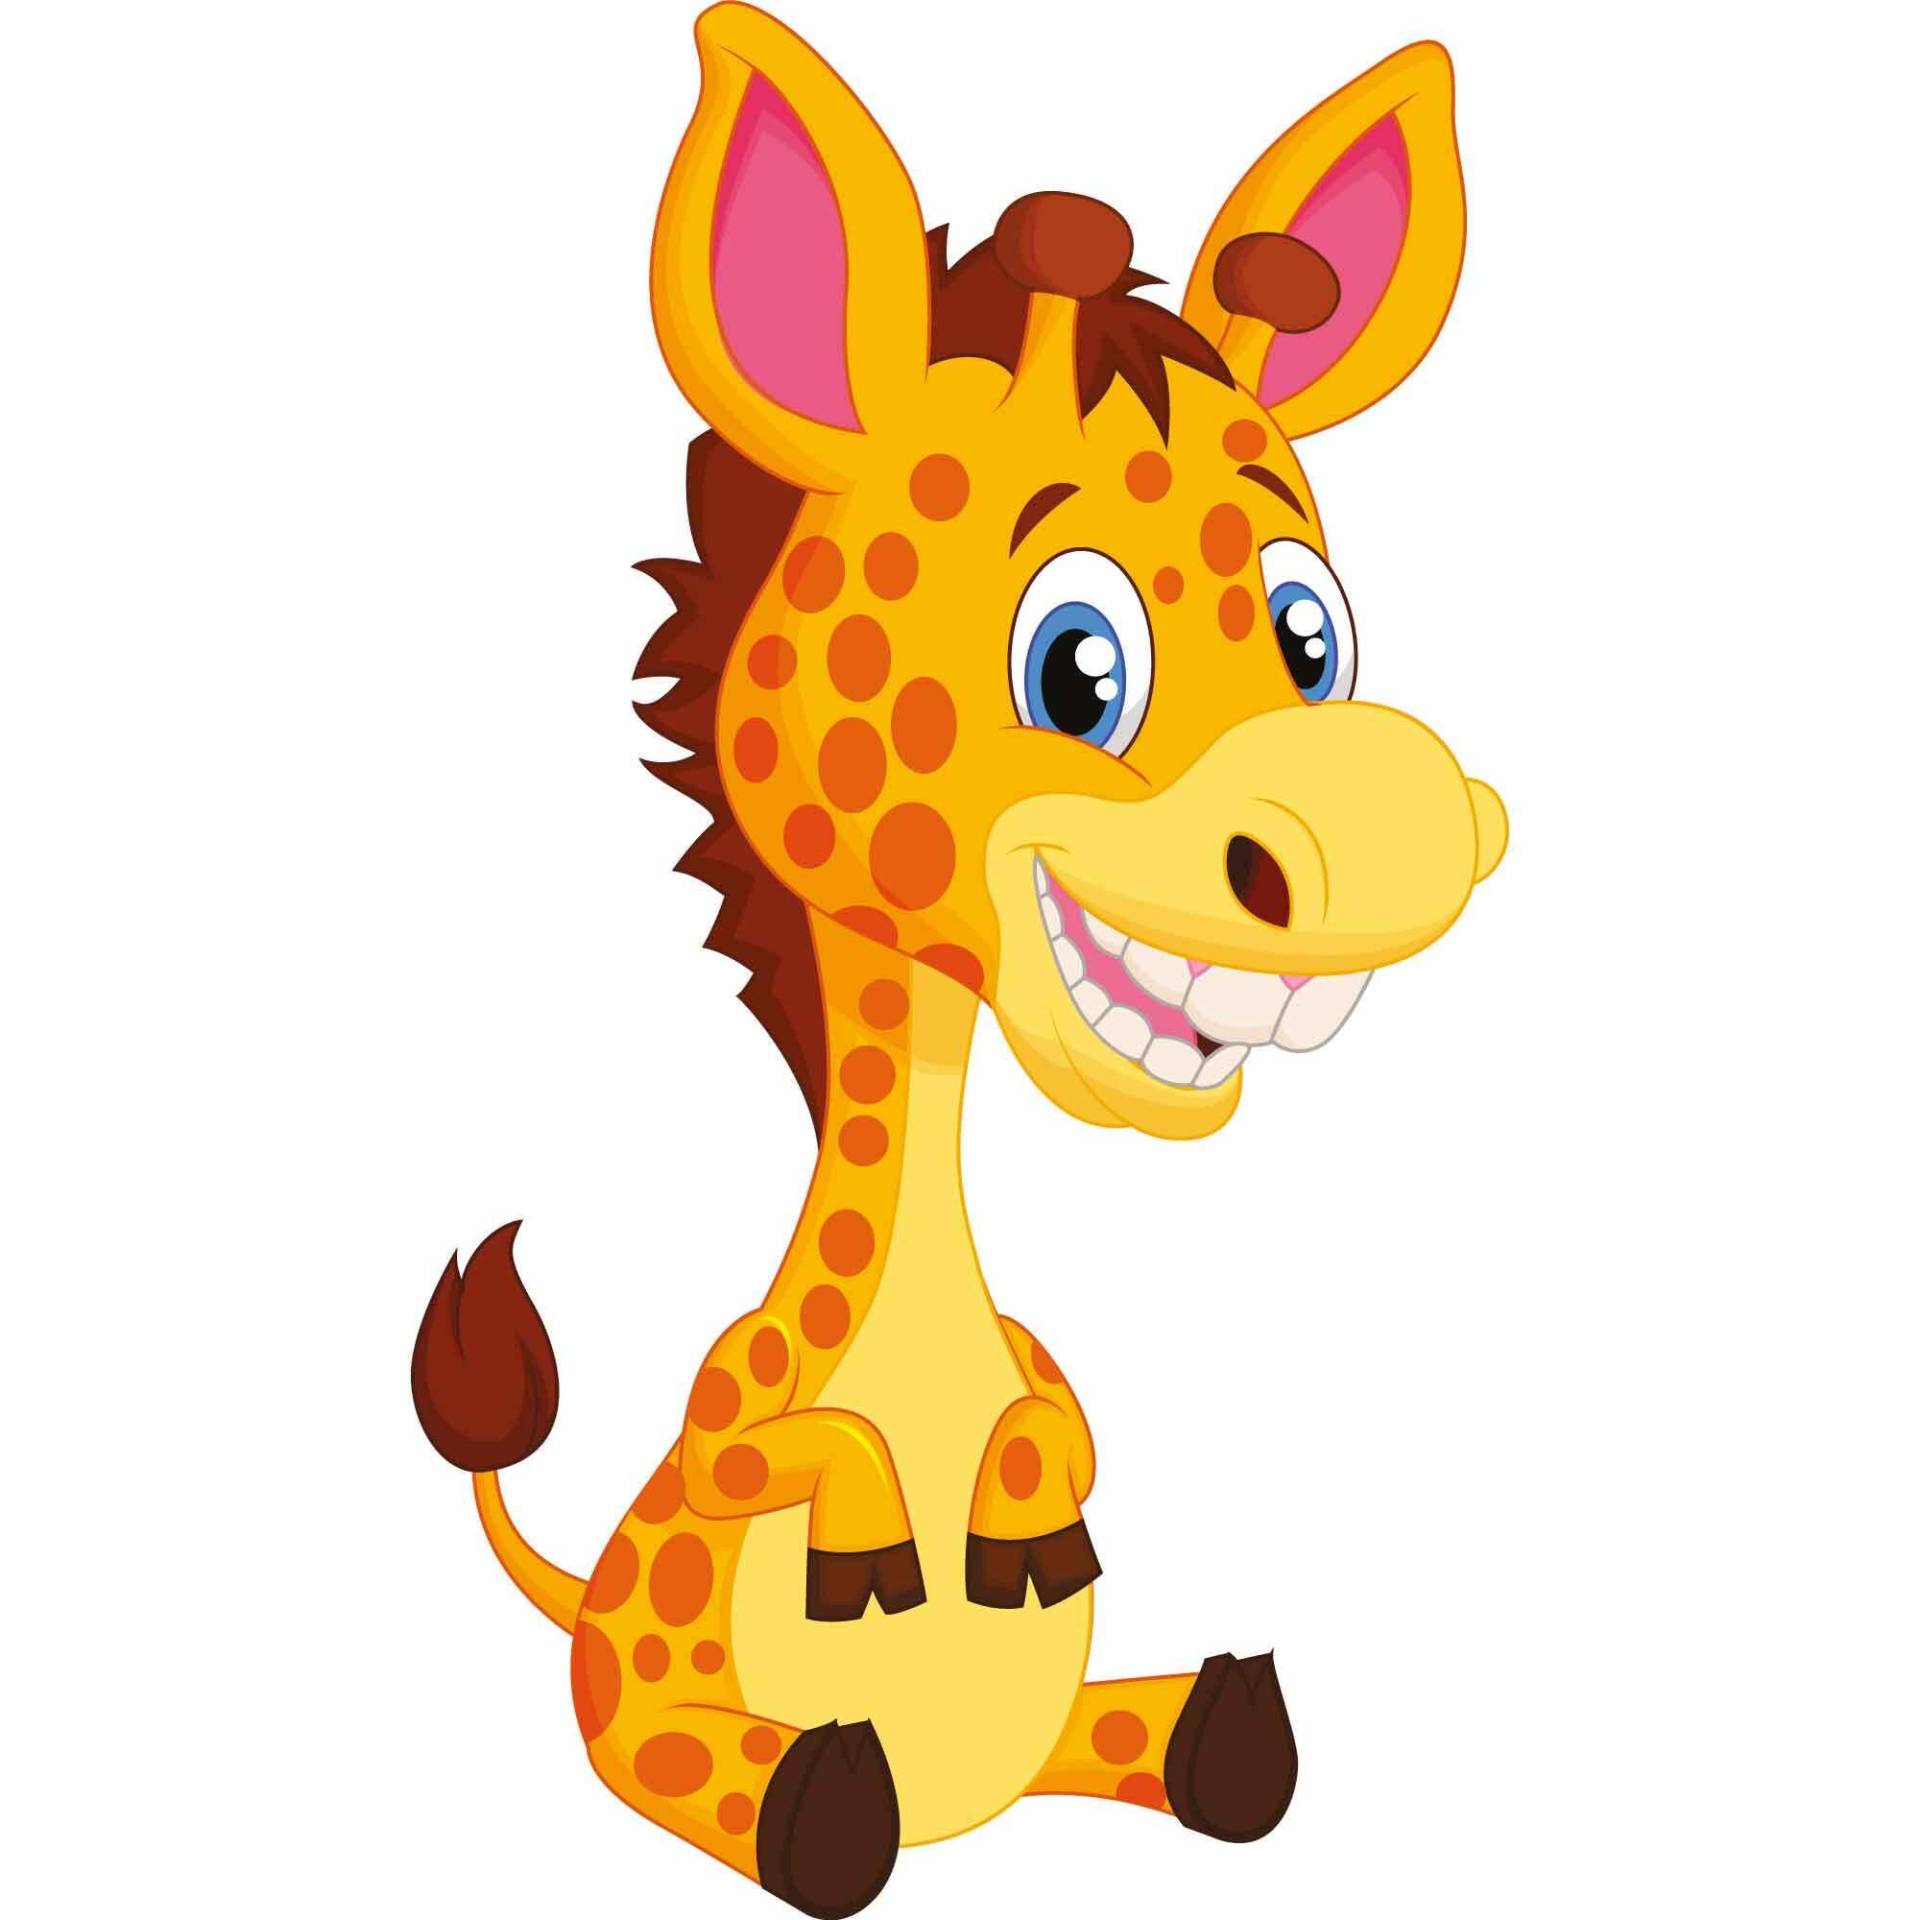 kleberio Aufkleber Giraffen wasserfest Familie Aufkleber Tropisch Wüste lächeln Afrika Tier Sticker Langer Hals Deko Autoaufkleber 13 x 7 cm von kleberio